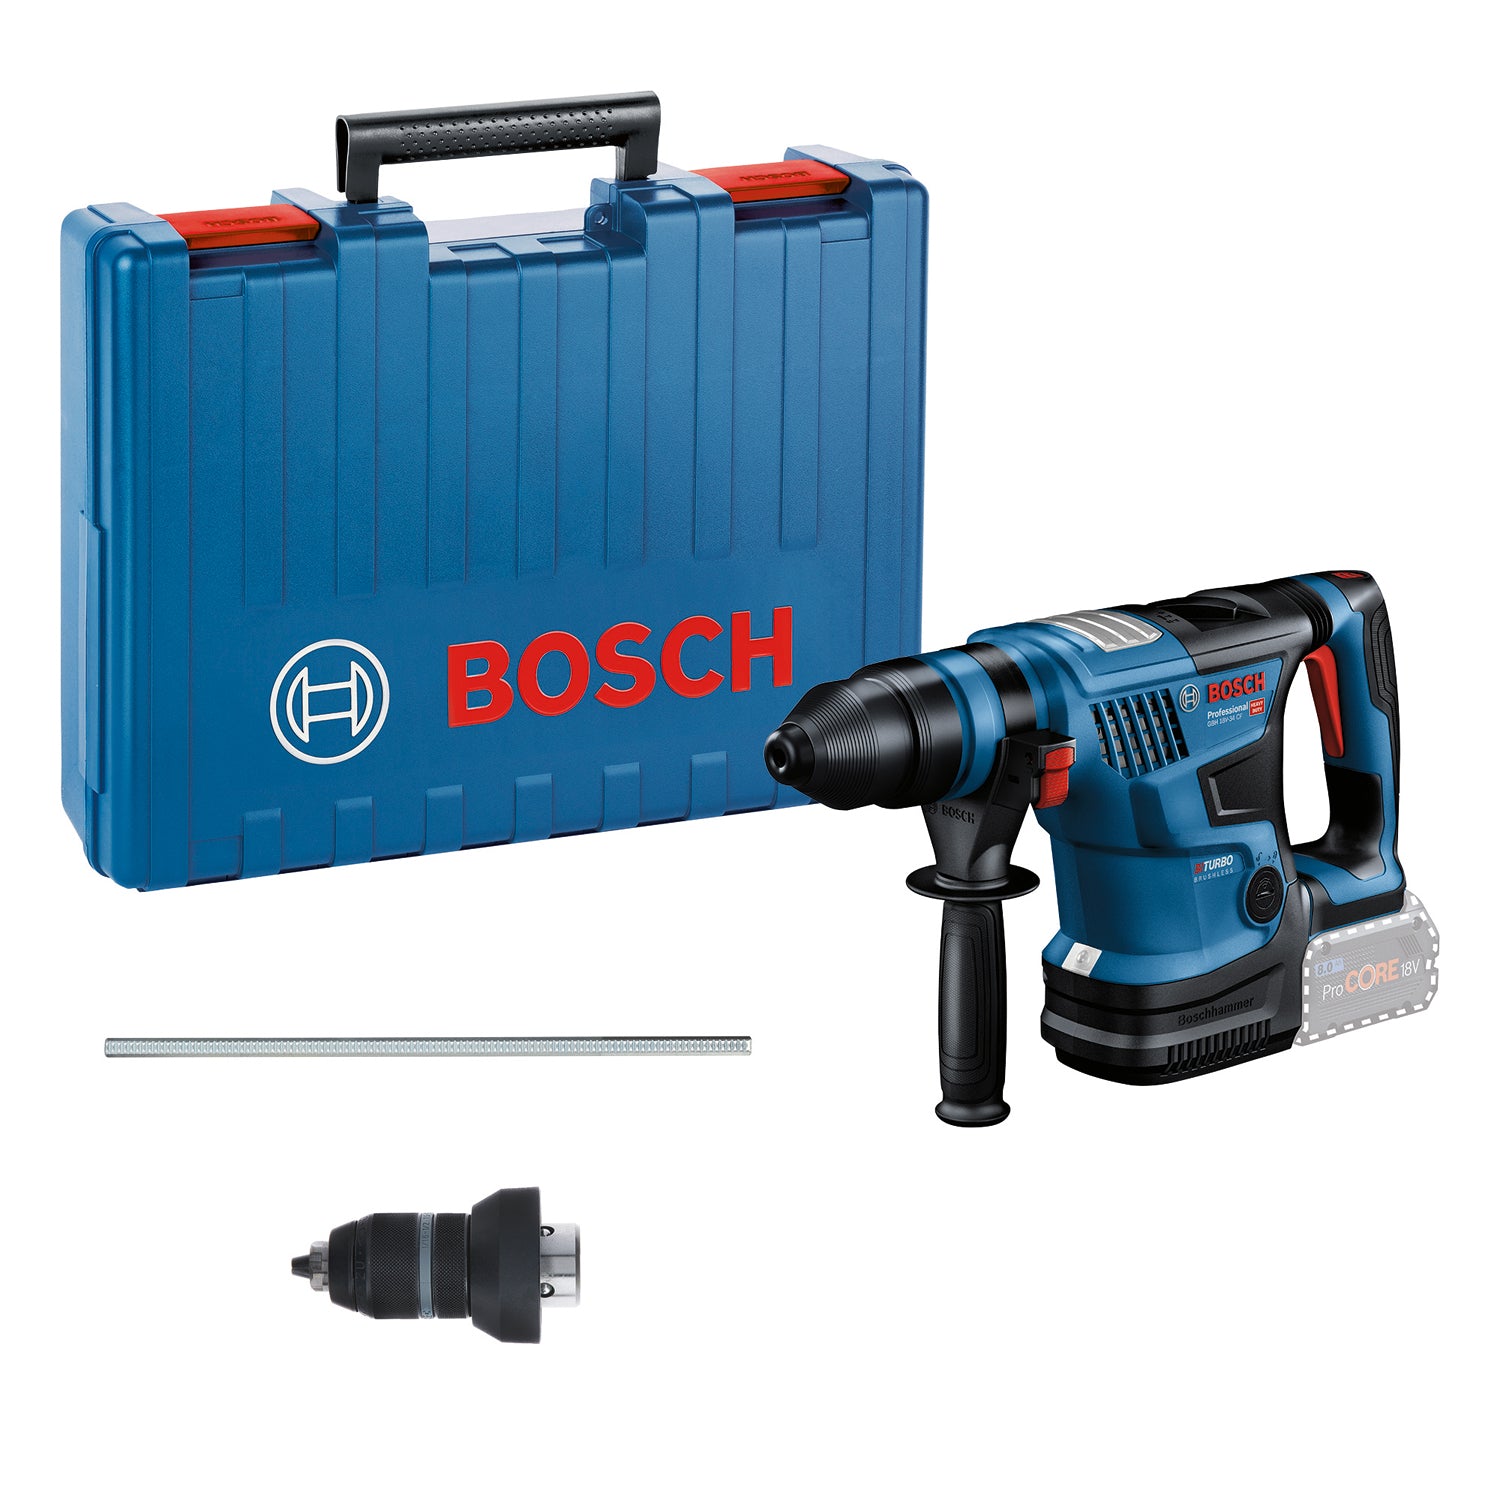 Bosch Professional GBH 18V-34 CF Akku-Bohrhammer 5.8 Joule BITURBO mit SDS+ ohne Akku/Lader im Handwerkerkoffer